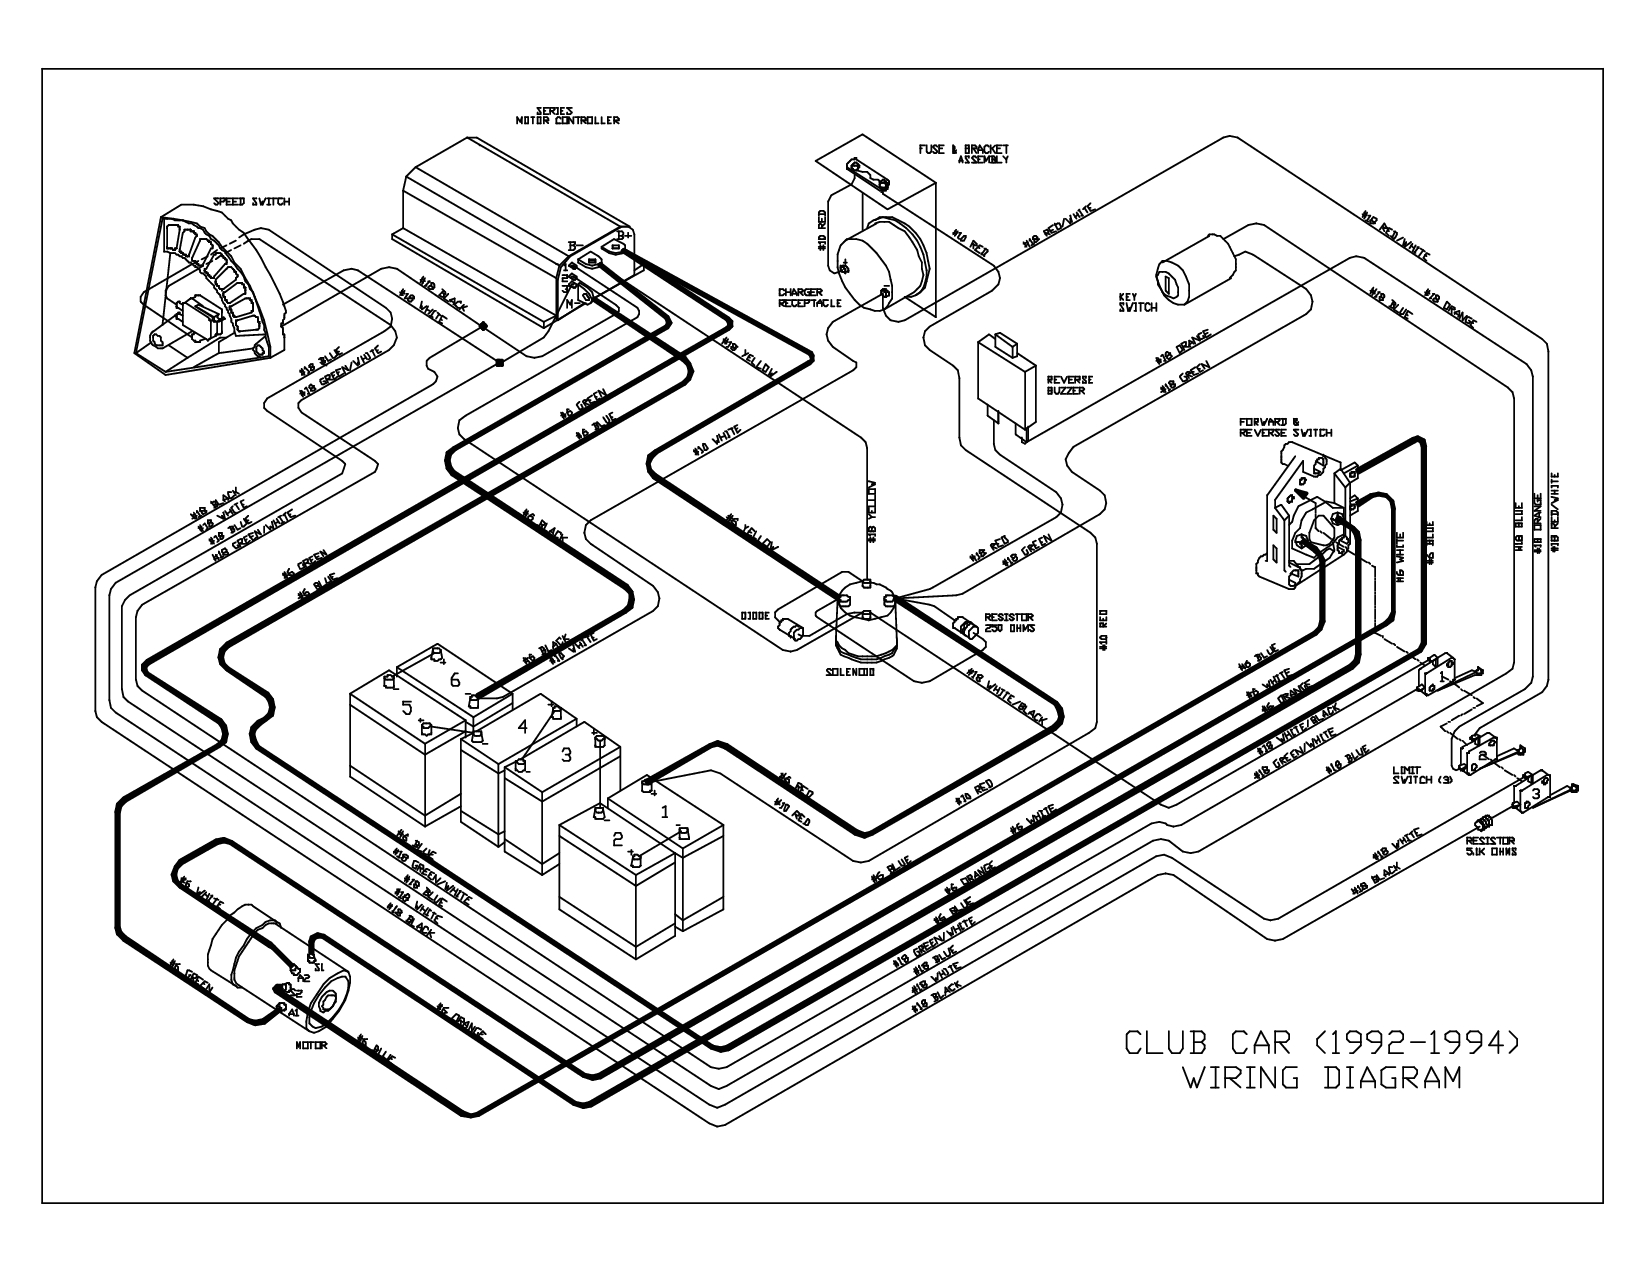 1995 club car wiring diagram club car 1992 1994 wiring diagram 92 club car wiring diagram free download